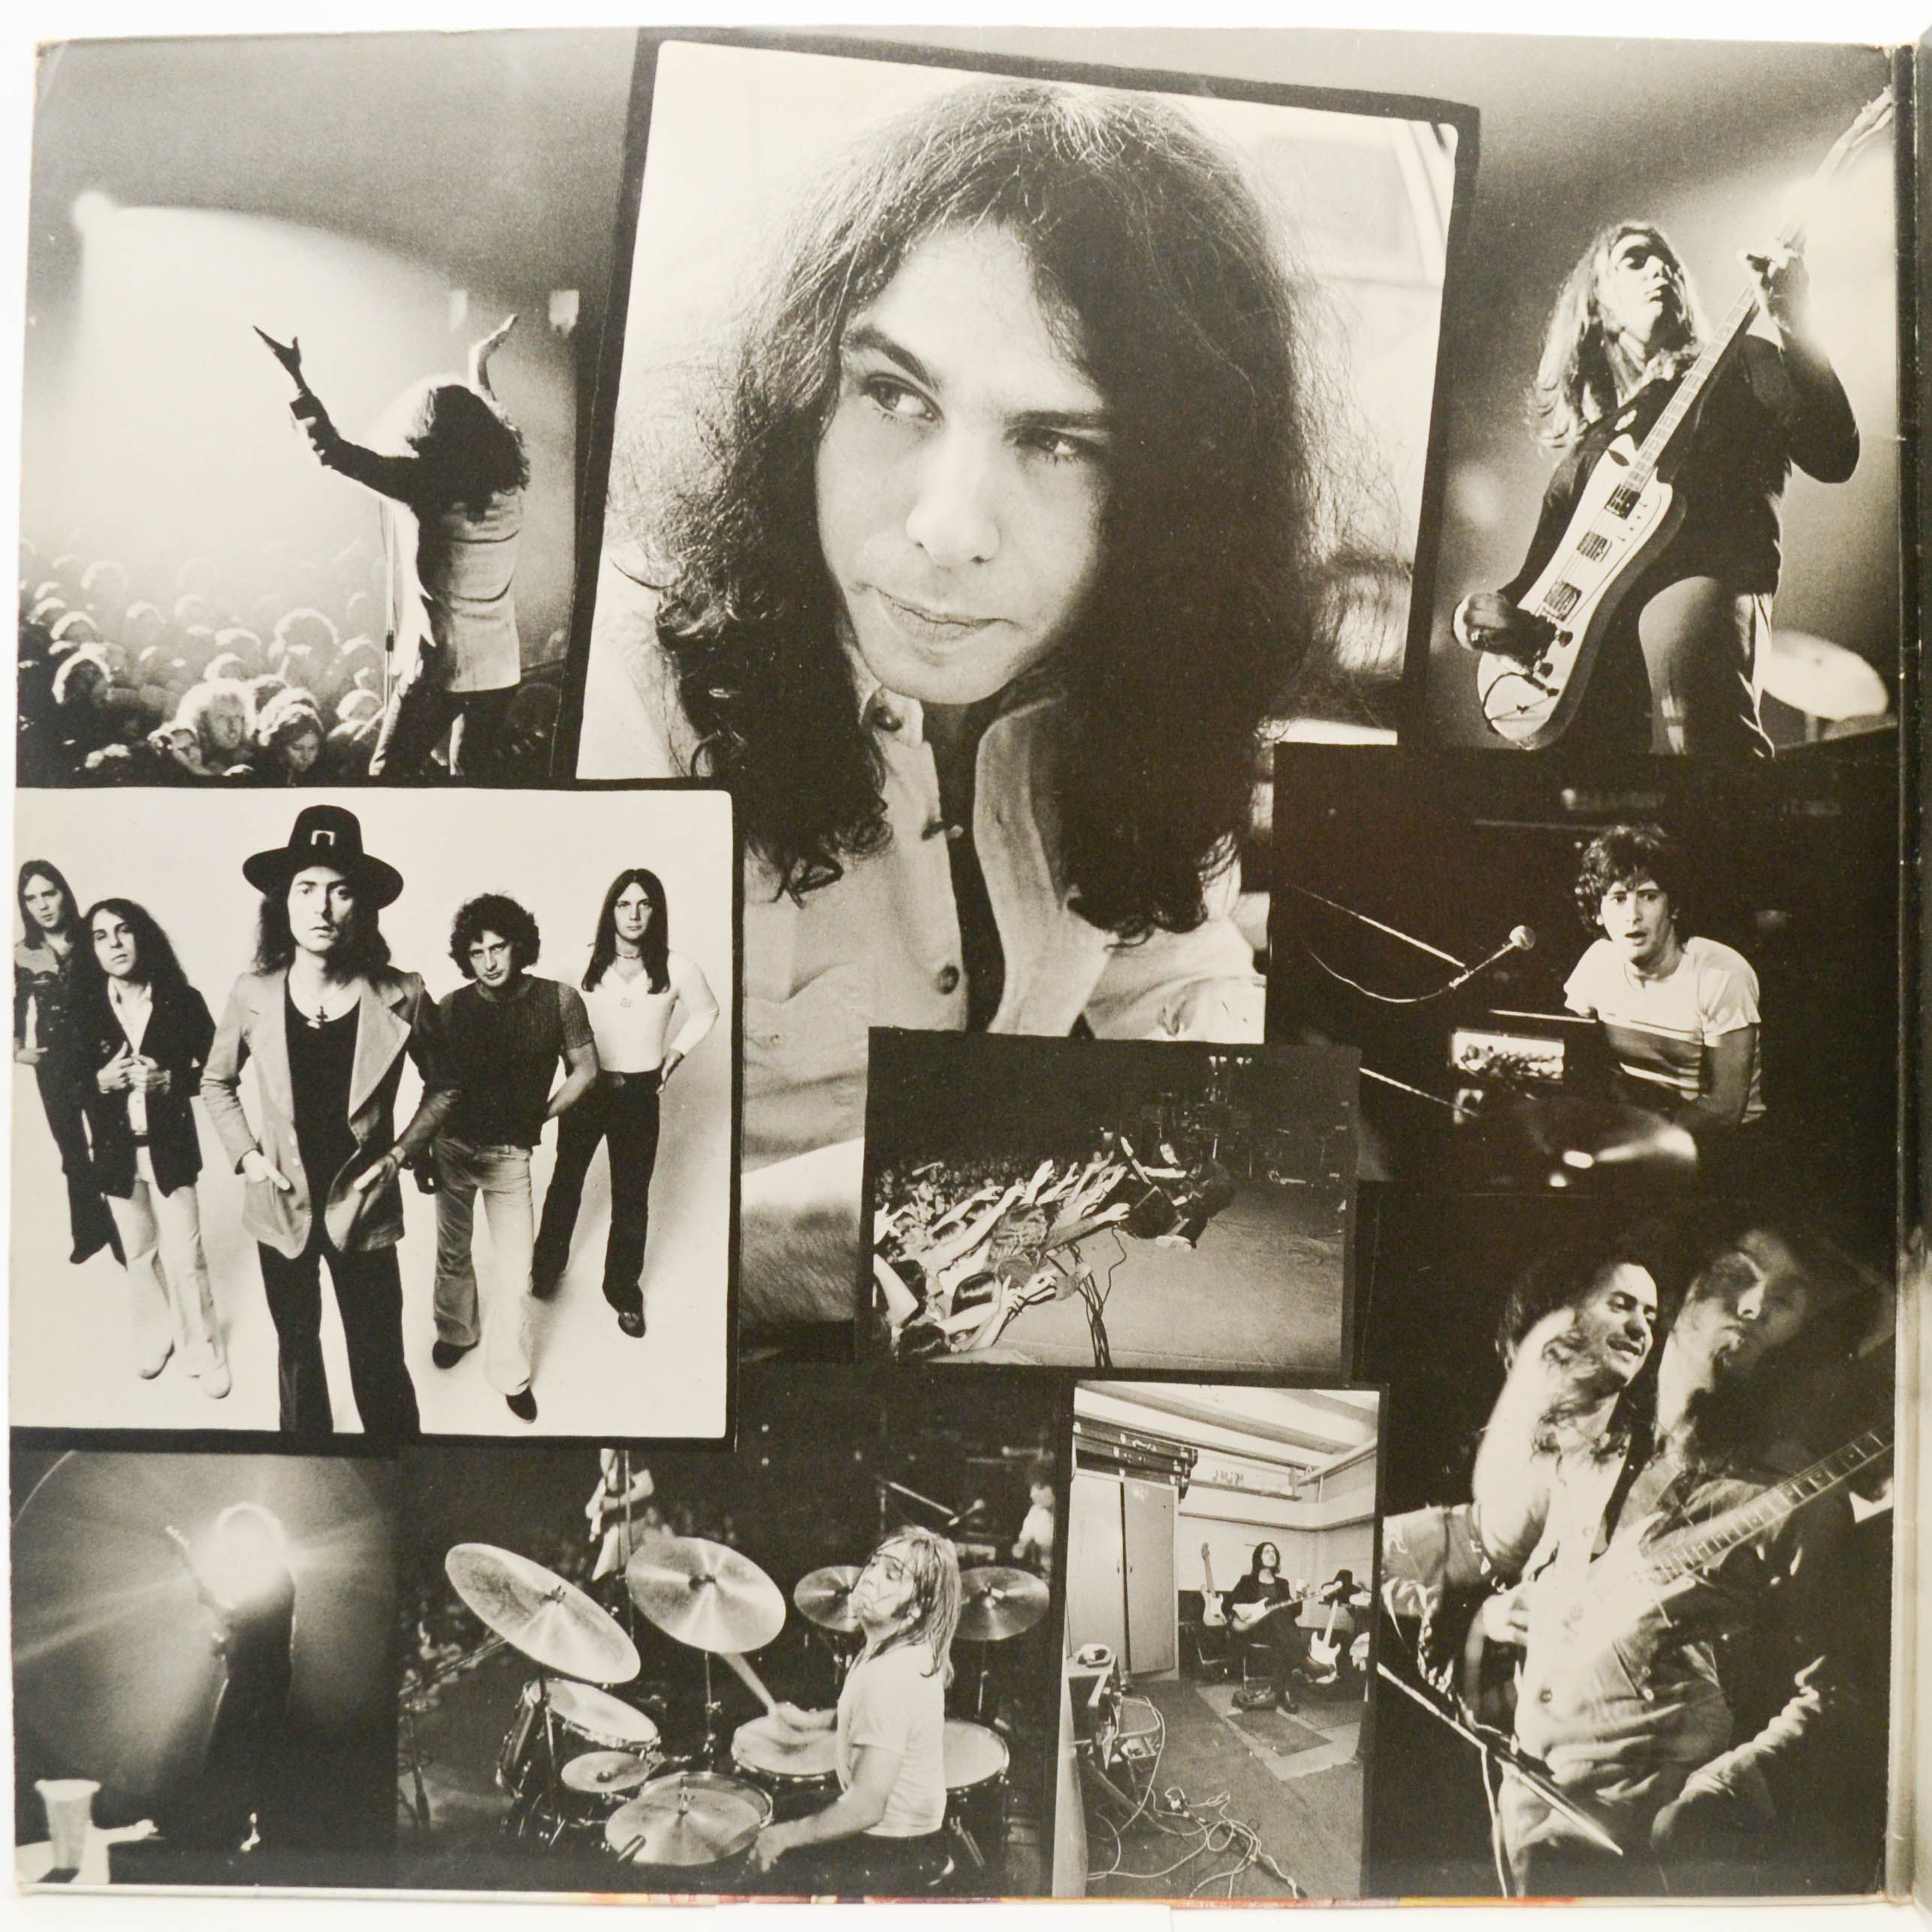 Rainbow — Ritchie Blackmore's Rainbow, 1975